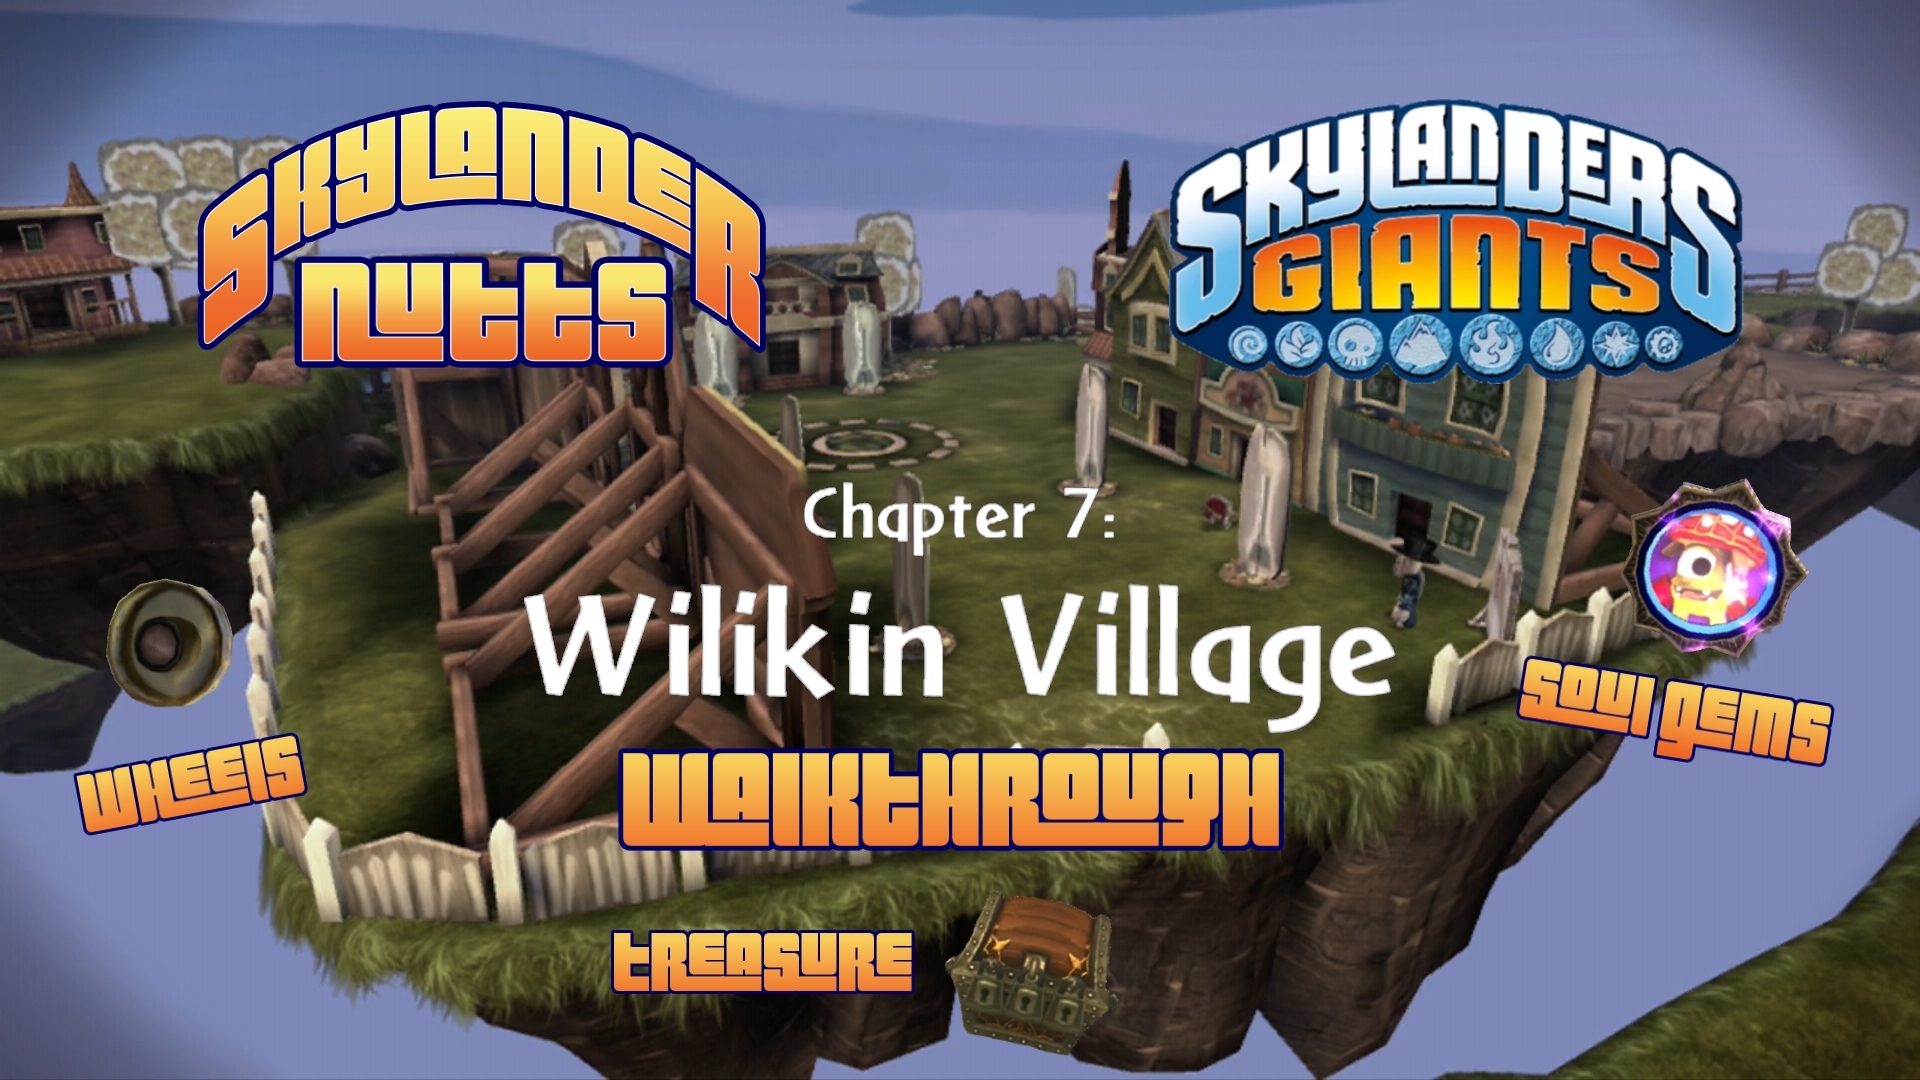 Giants Walkthrough (Ch 7 - Wilikin Village)